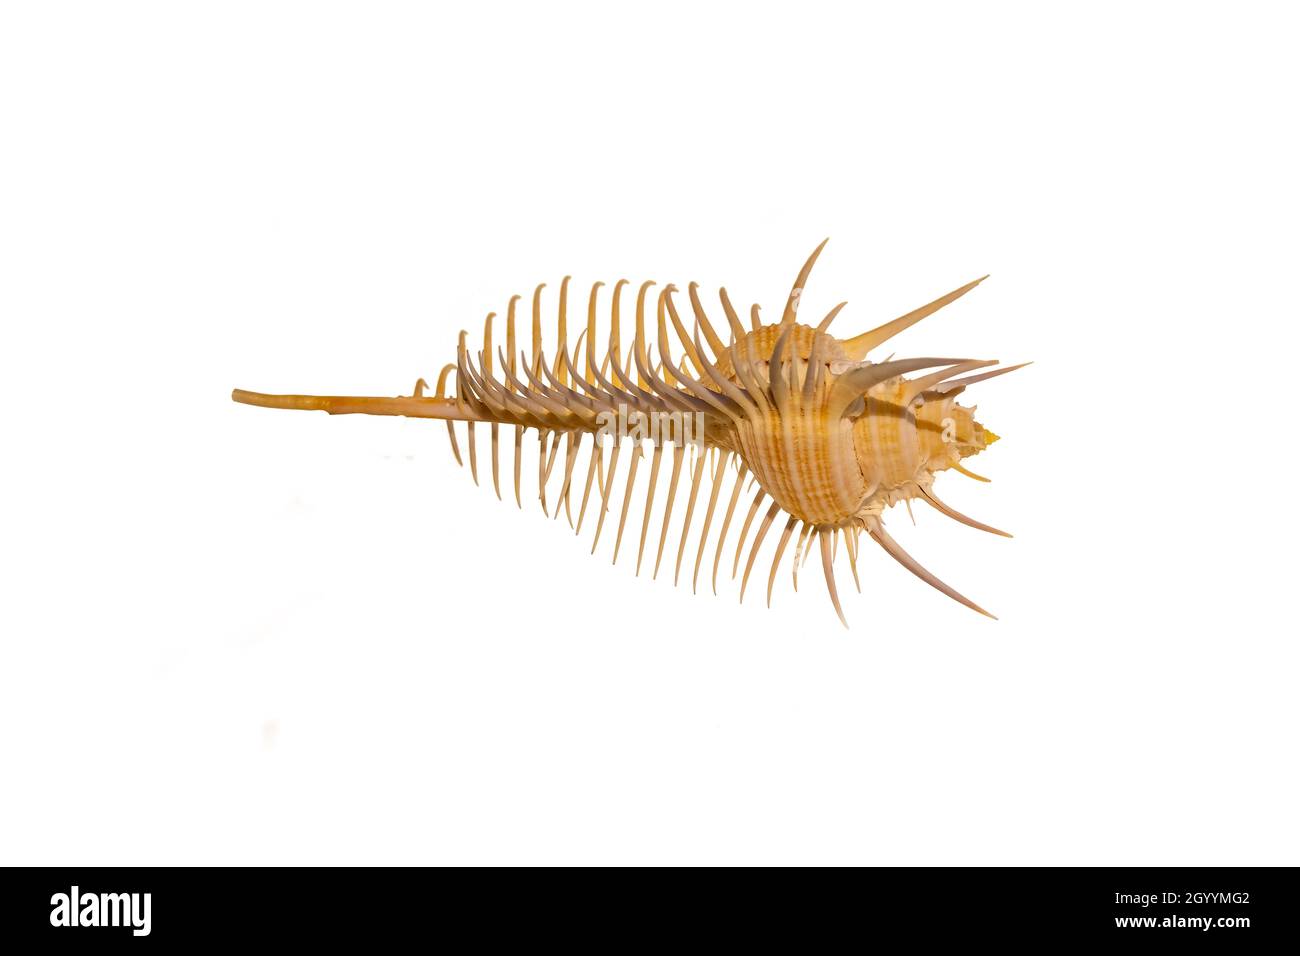 Détail du squelette d'un escargot marin.L'escargot de mer est un nom commun pour les mollusques gastéropodes marins lents, habituellement avec des coquilles externes visibles, Banque D'Images